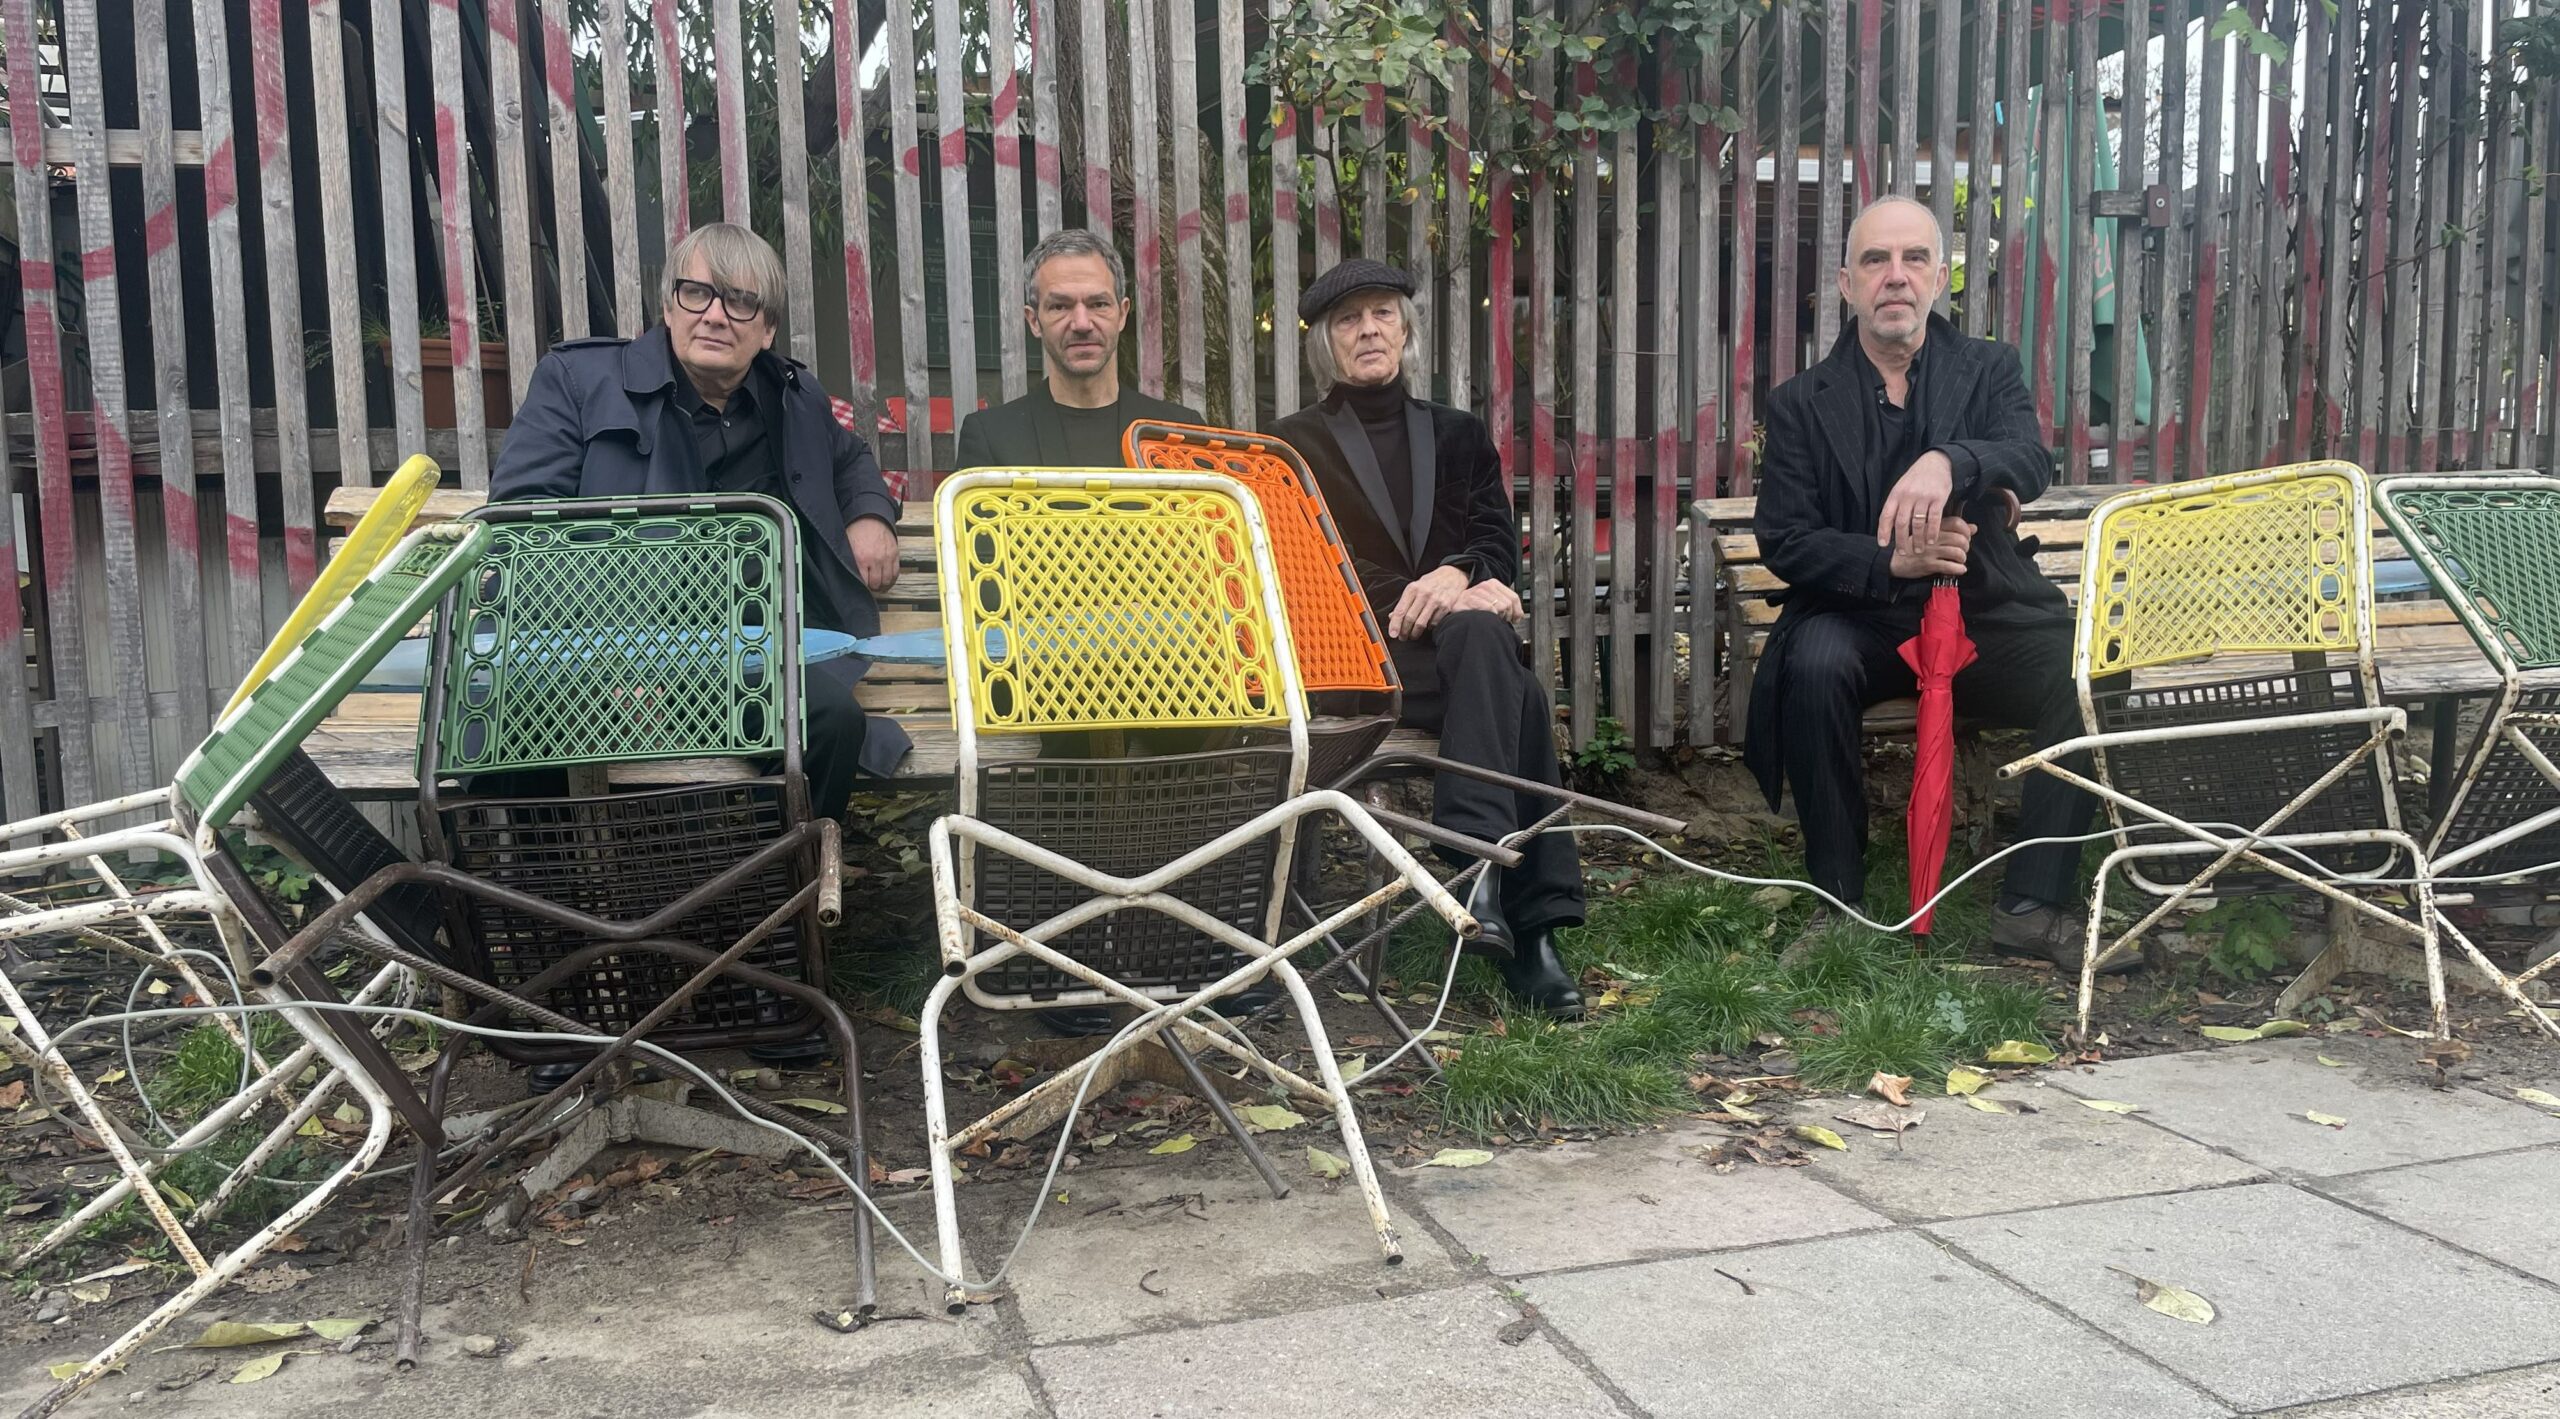 Die vier Musiker sitzten auf Holzbänken, vor ihnen stehen und lehnen so alte wie bunte Gartenstühle